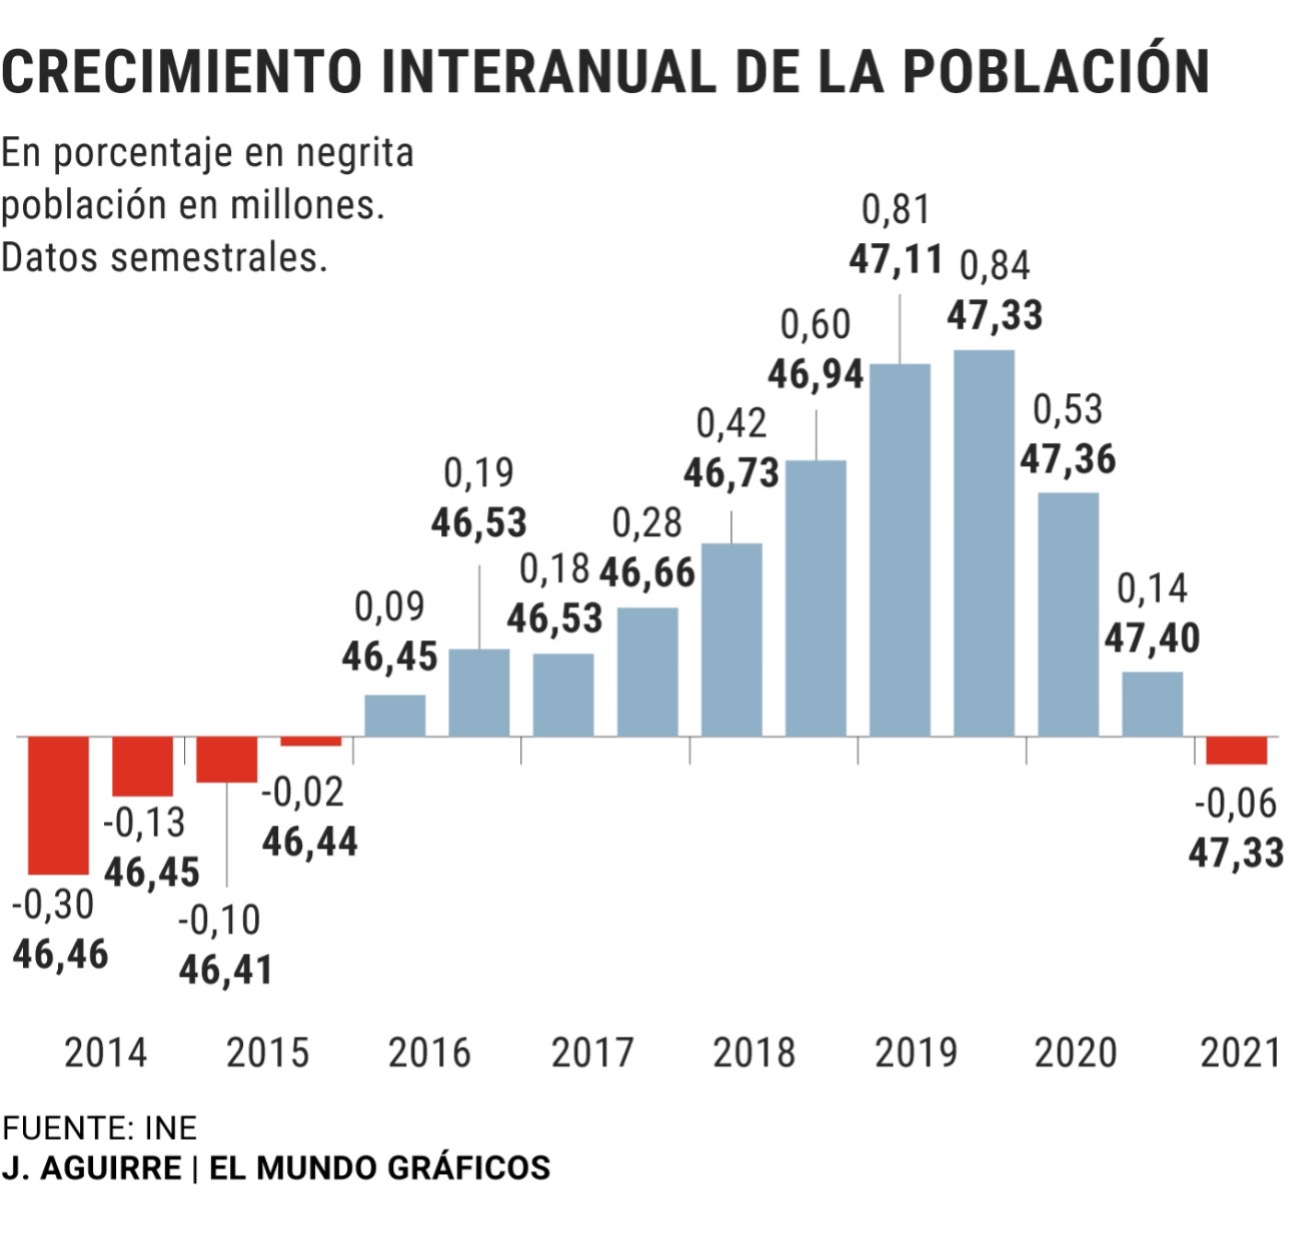 [GRAPH] Crecimiento interanual de la población en España - INE